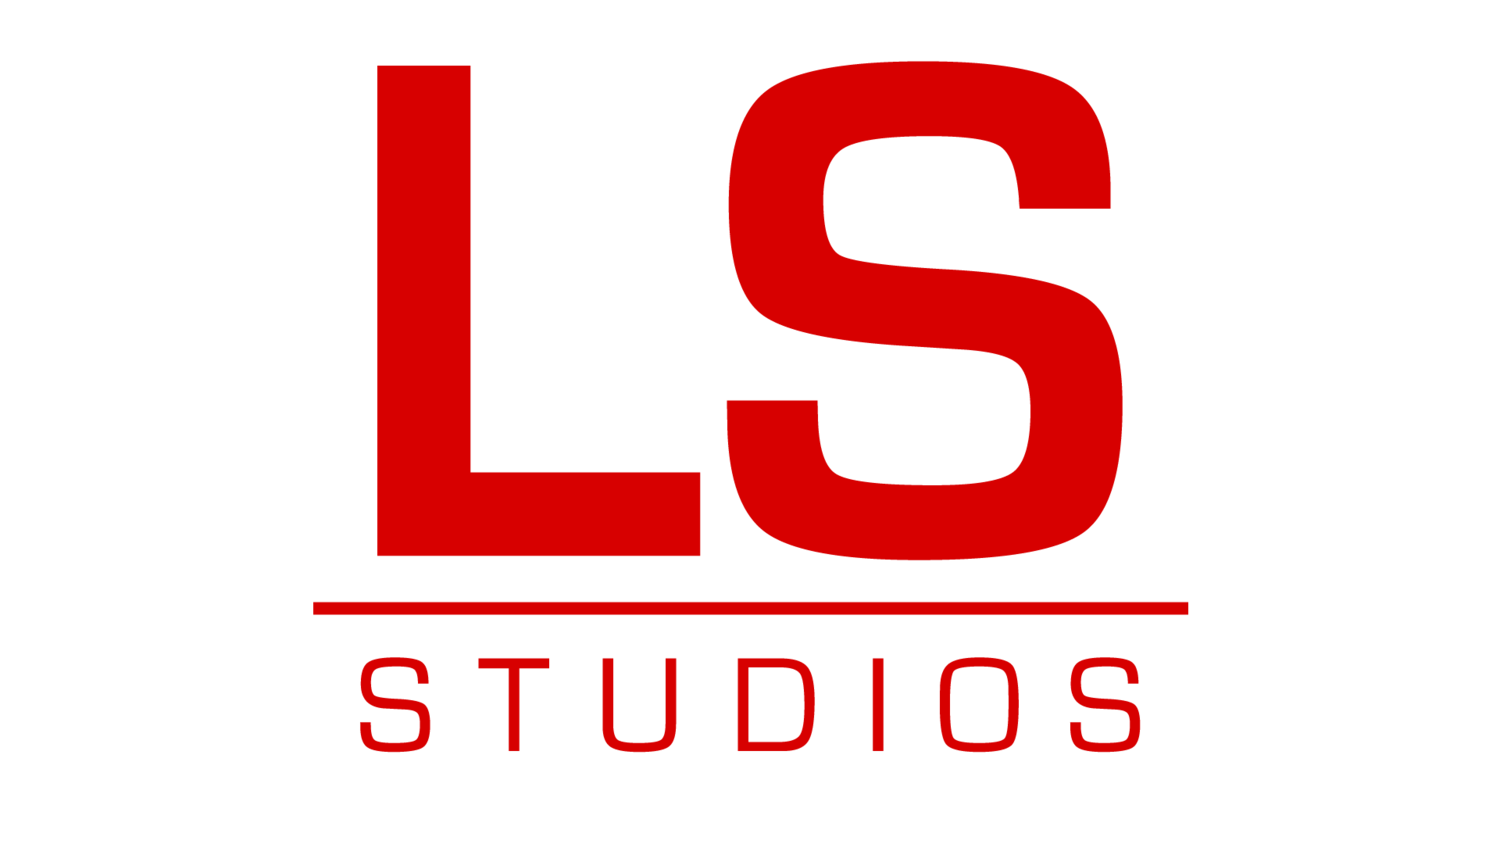  LS Studios 